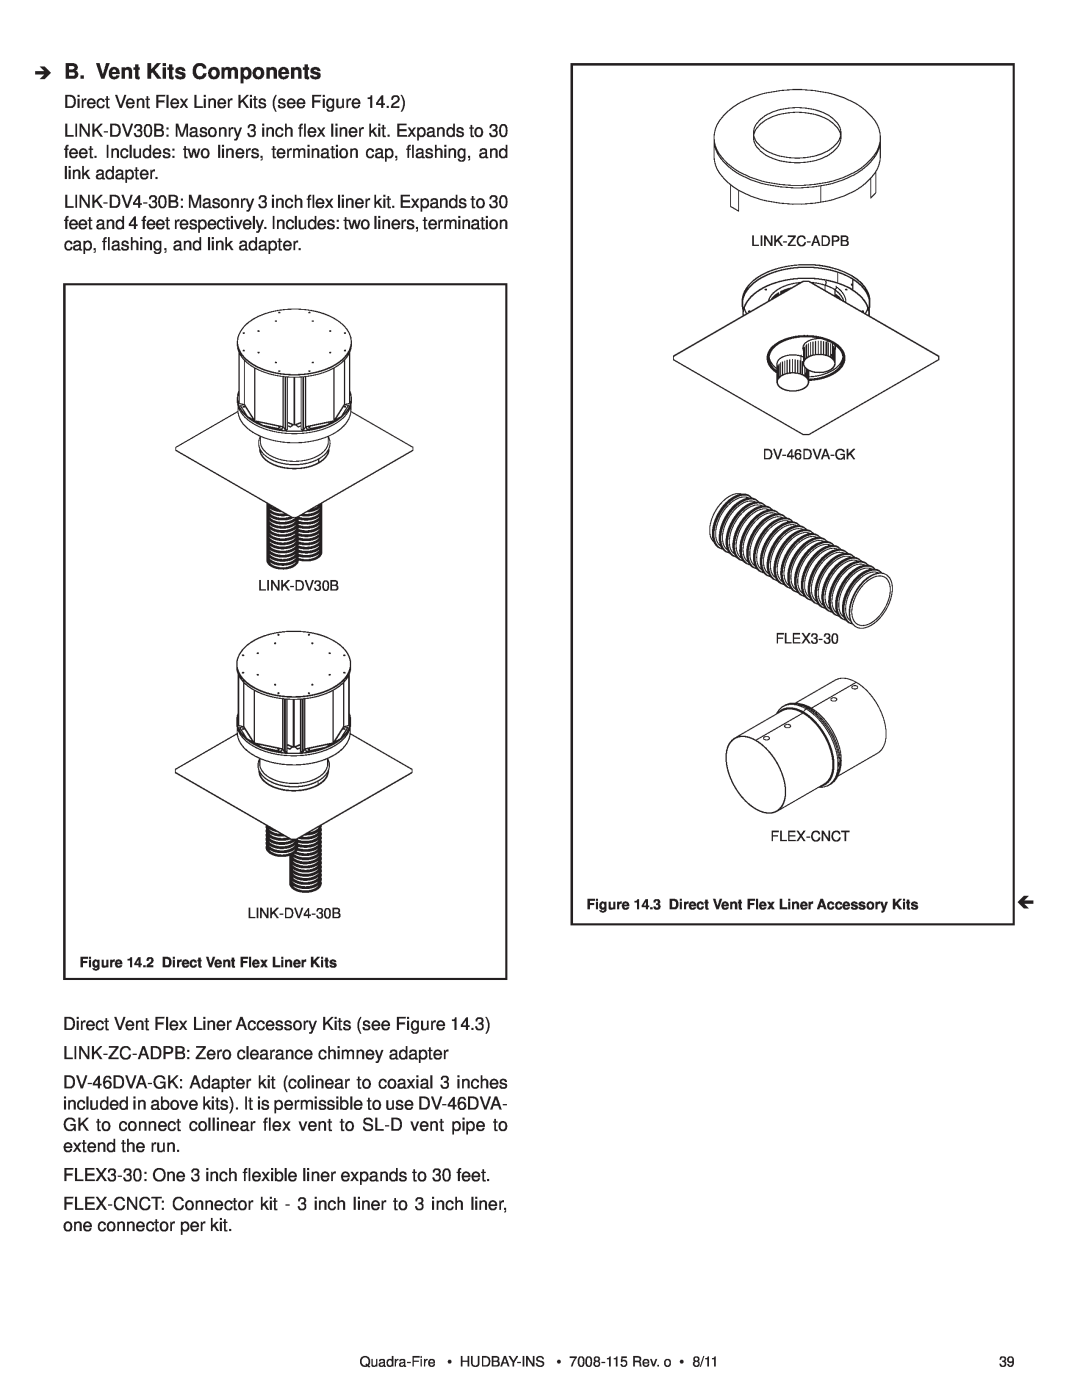 Quadra-Fire 7008-115 owner manual B. Vent Kits Components 